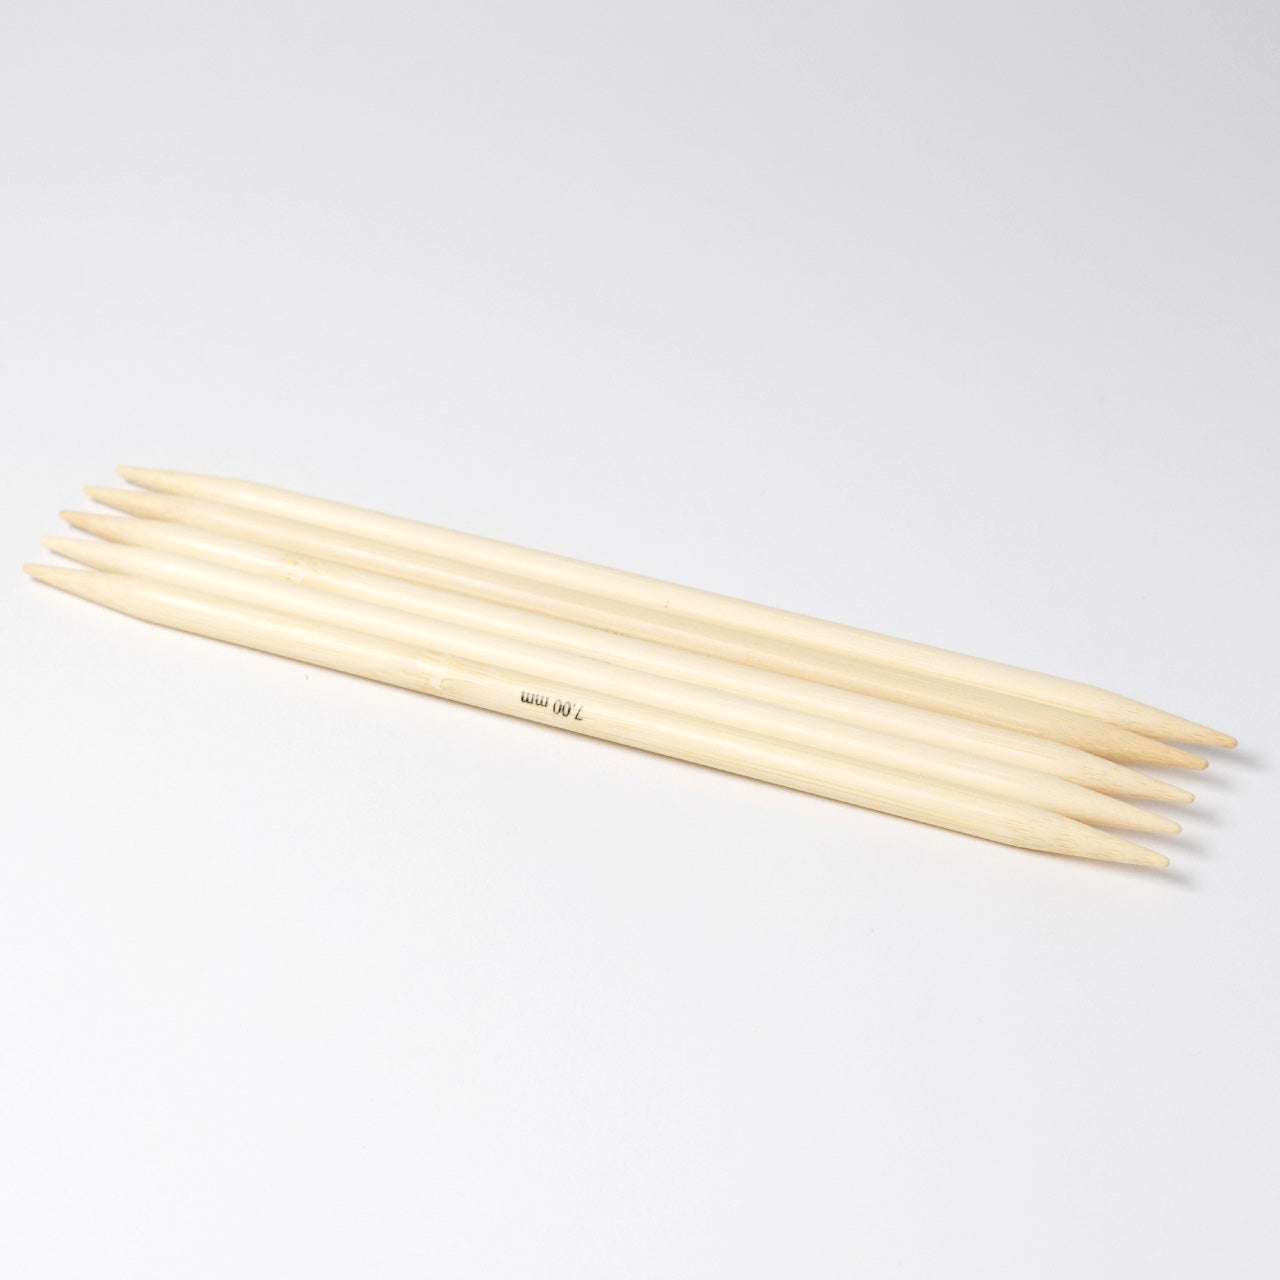 Hjertegarn // STYLE BAMBOO // Strømpepinde 20 cm i bambus str. 7 mm